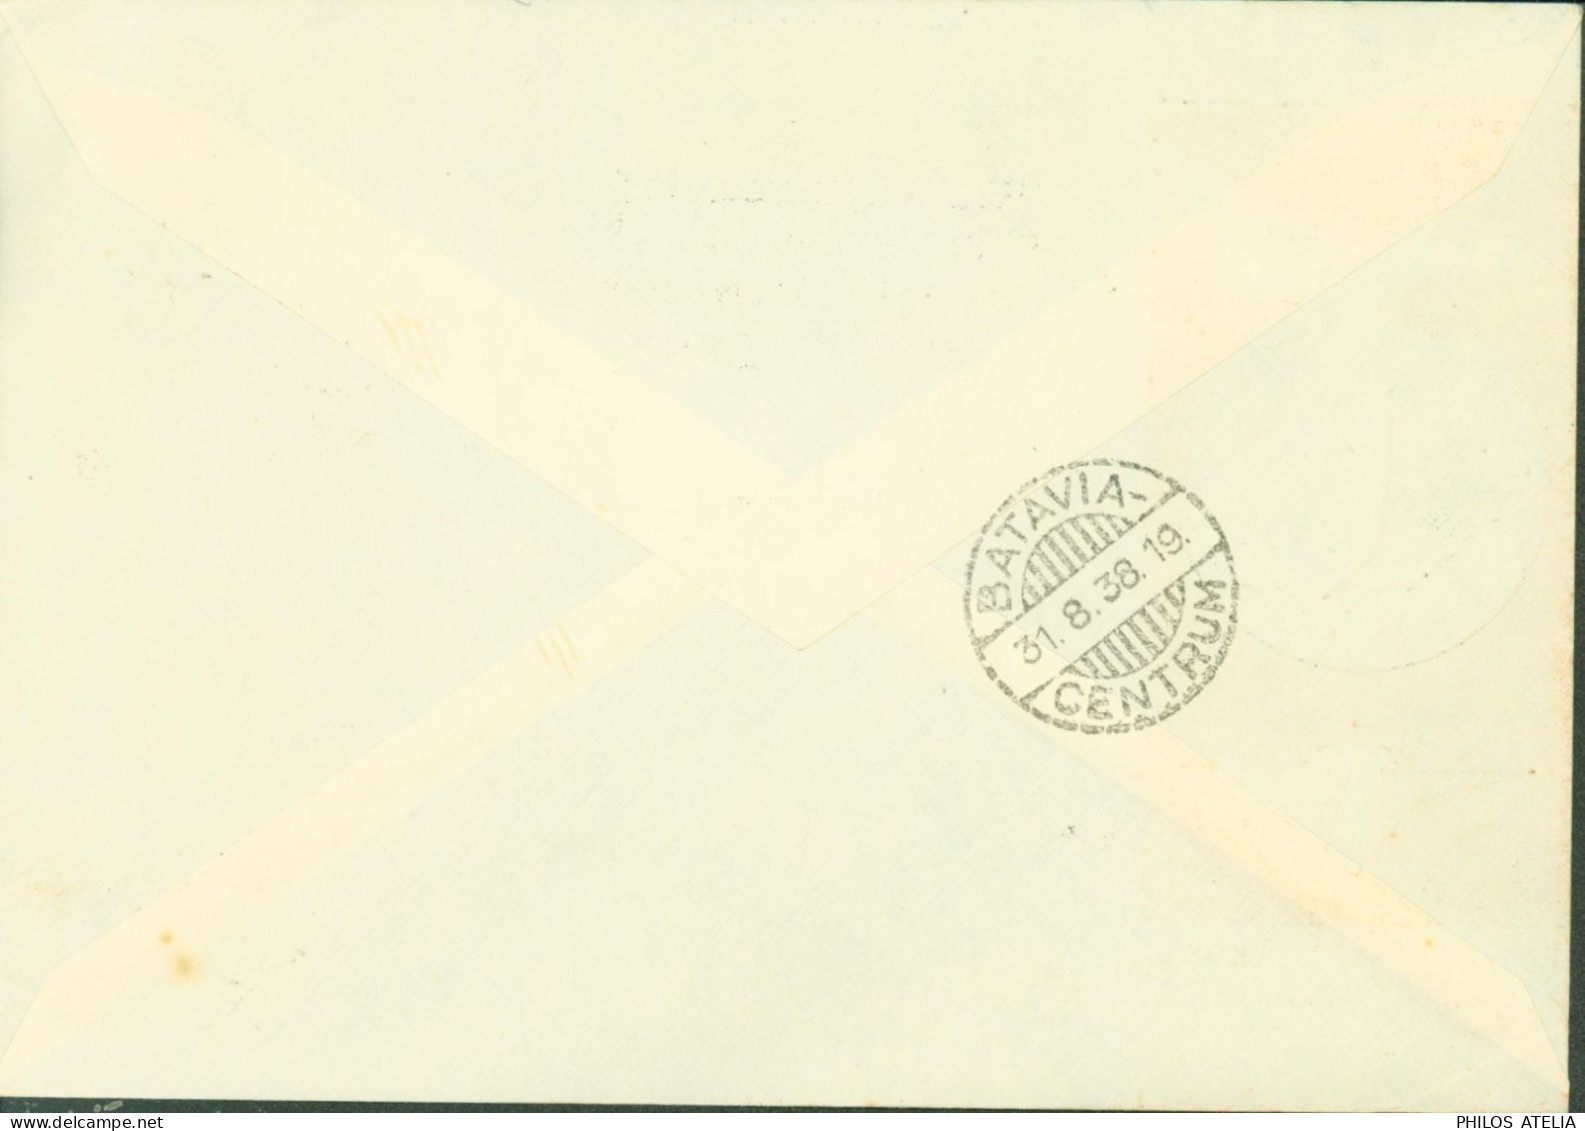 Indochine Enveloppe + Cachet 1ère Liaison Postale Aérienne 1er Vol De La KNILM Saigon Singapore Batavia 31 8 1938 - Luchtpost